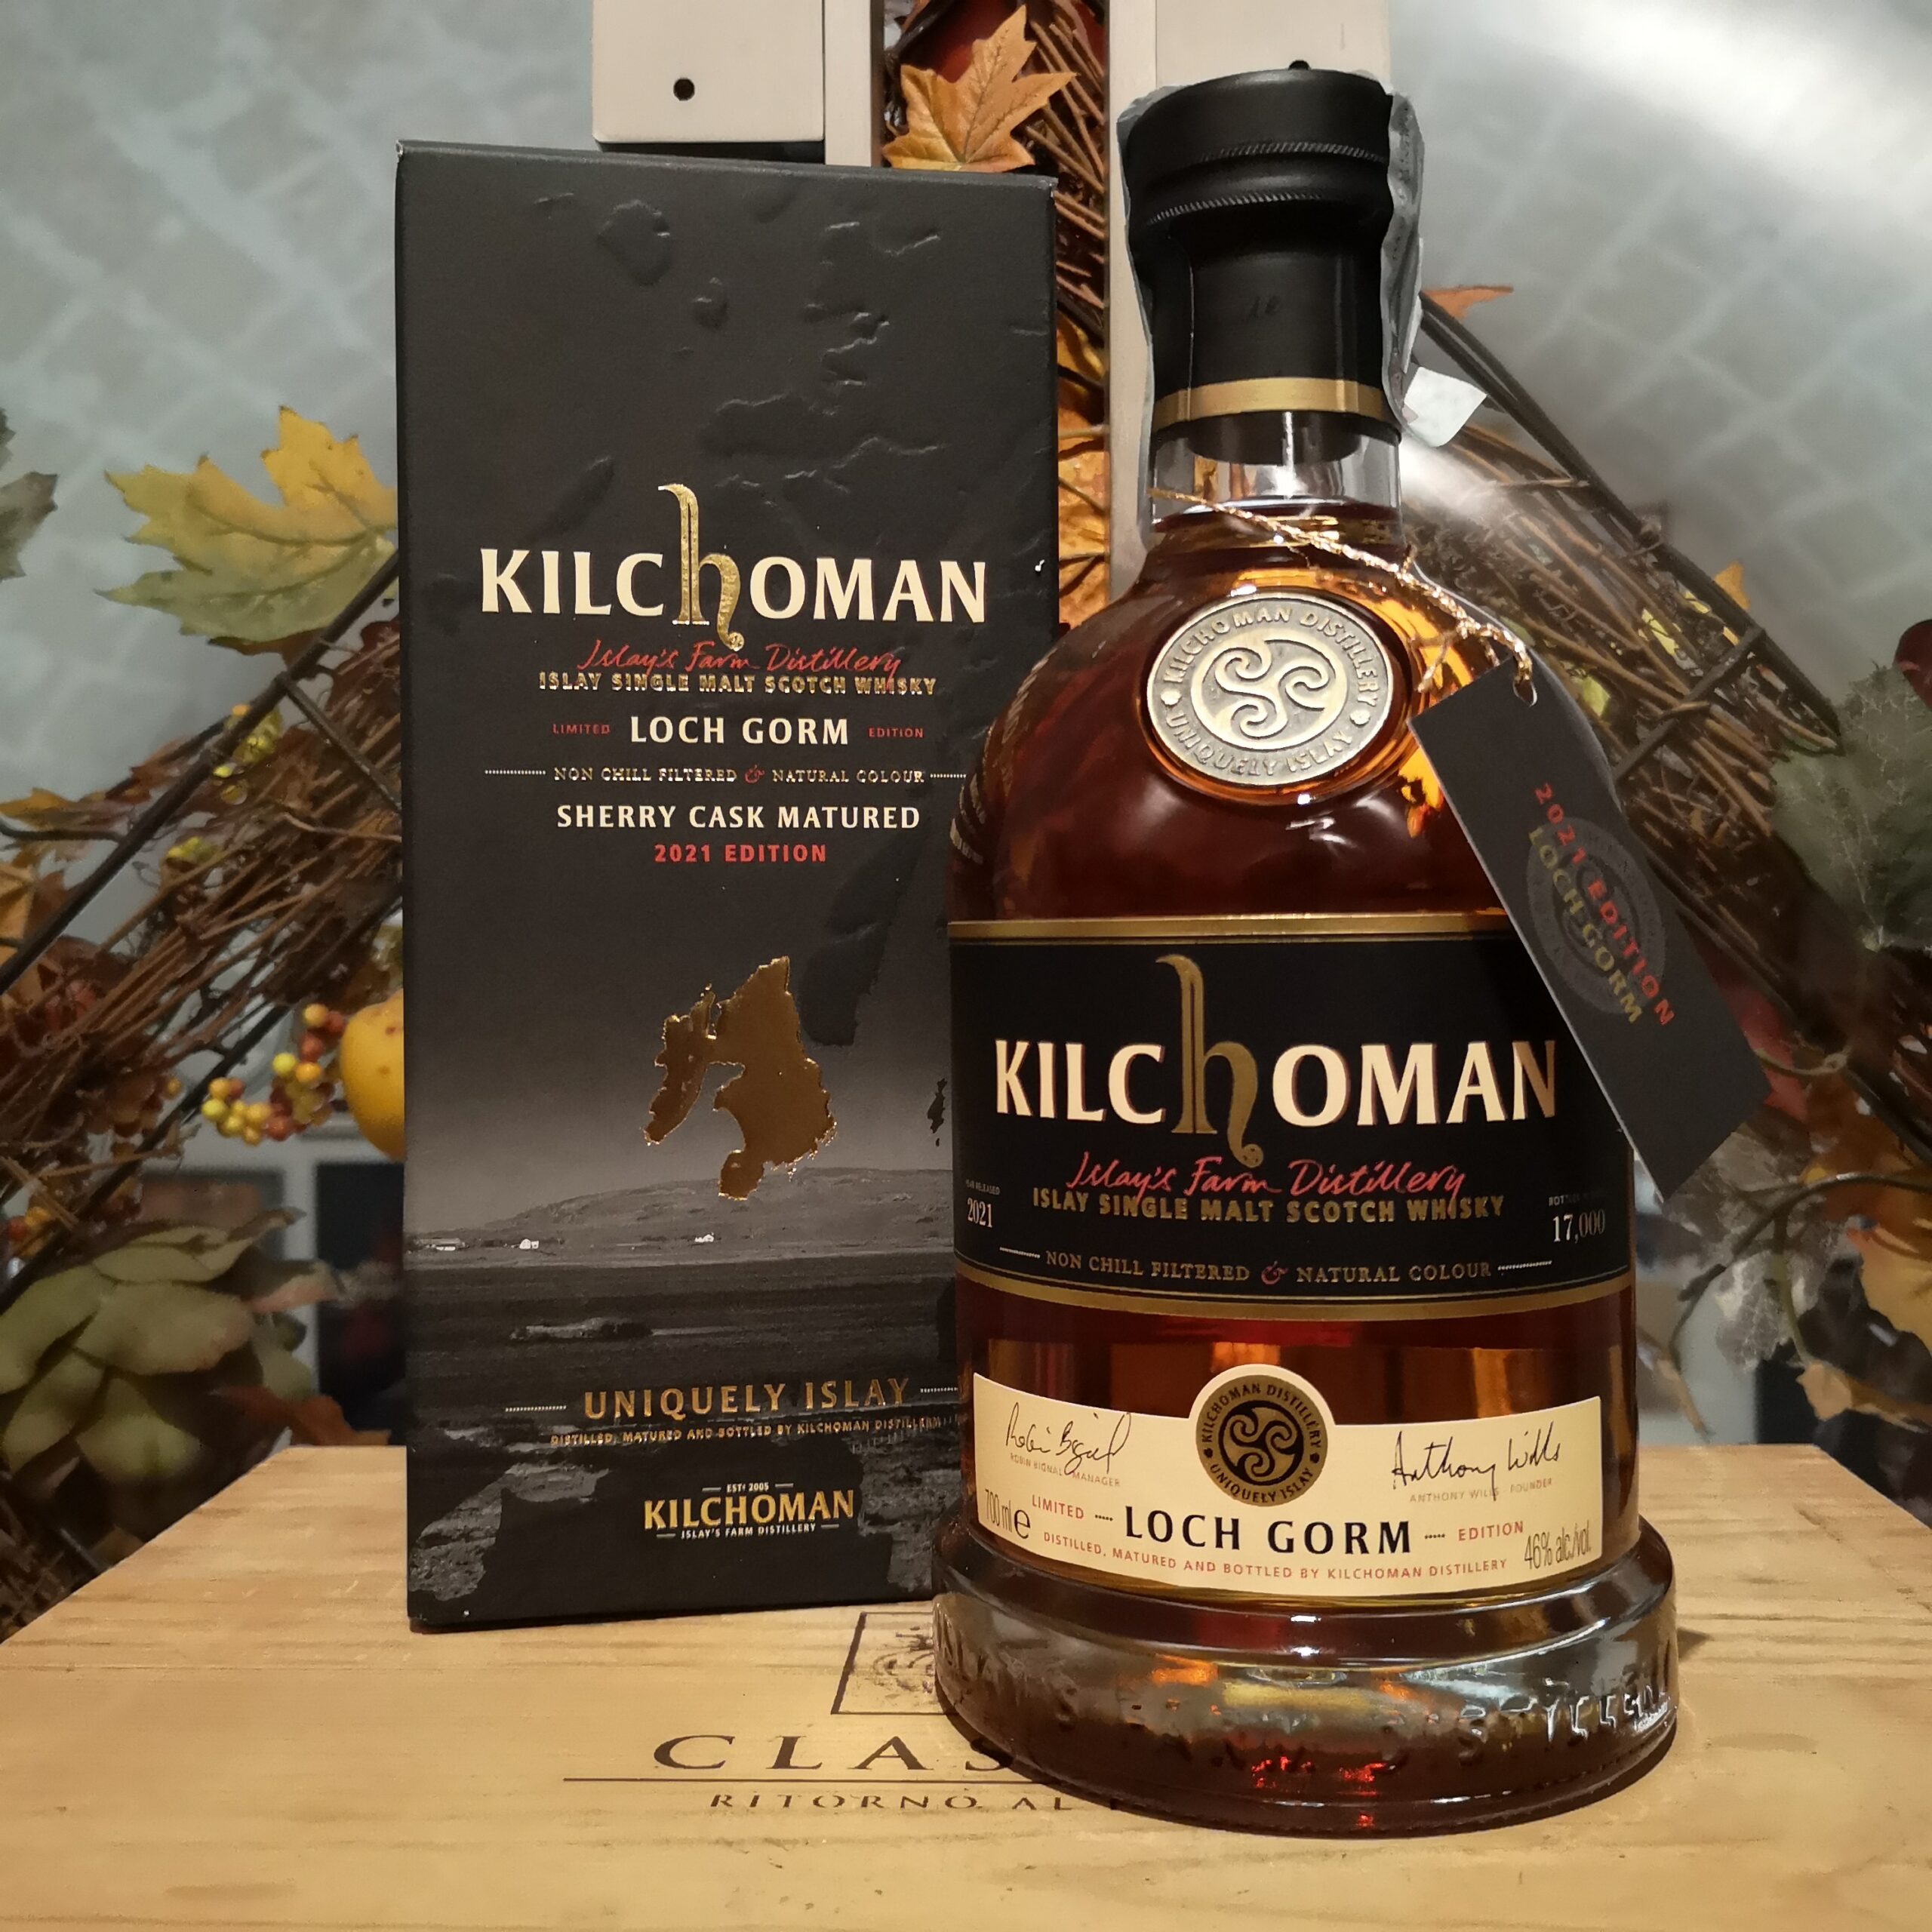 Kilchoman Islay Single Malt Scotch Whisky Loch Gorm 2021